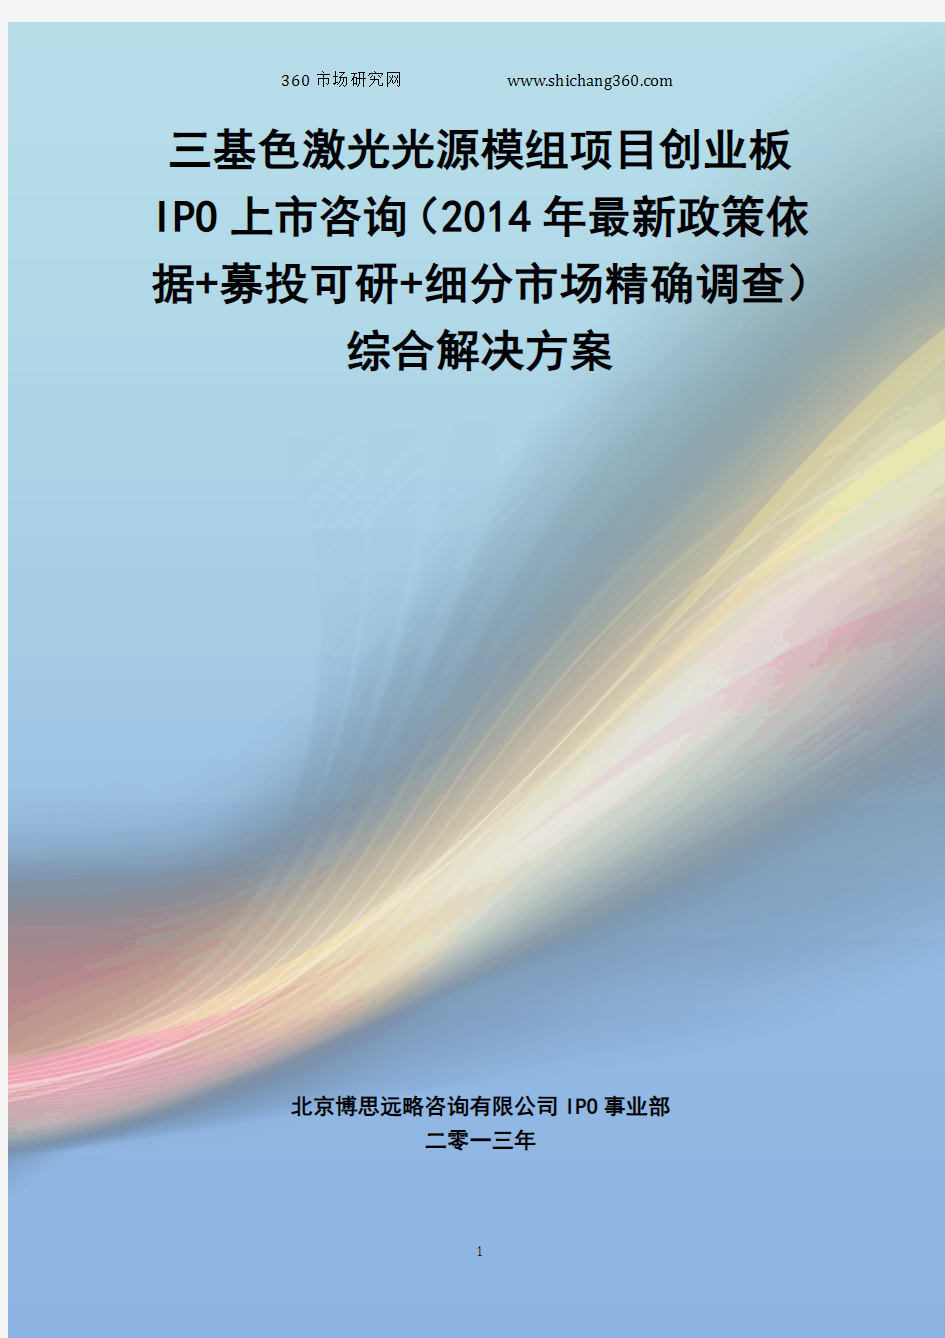 三基色激光光源模组IPO上市咨询(2014年最新政策+募投可研+细分市场调查)综合解决方案